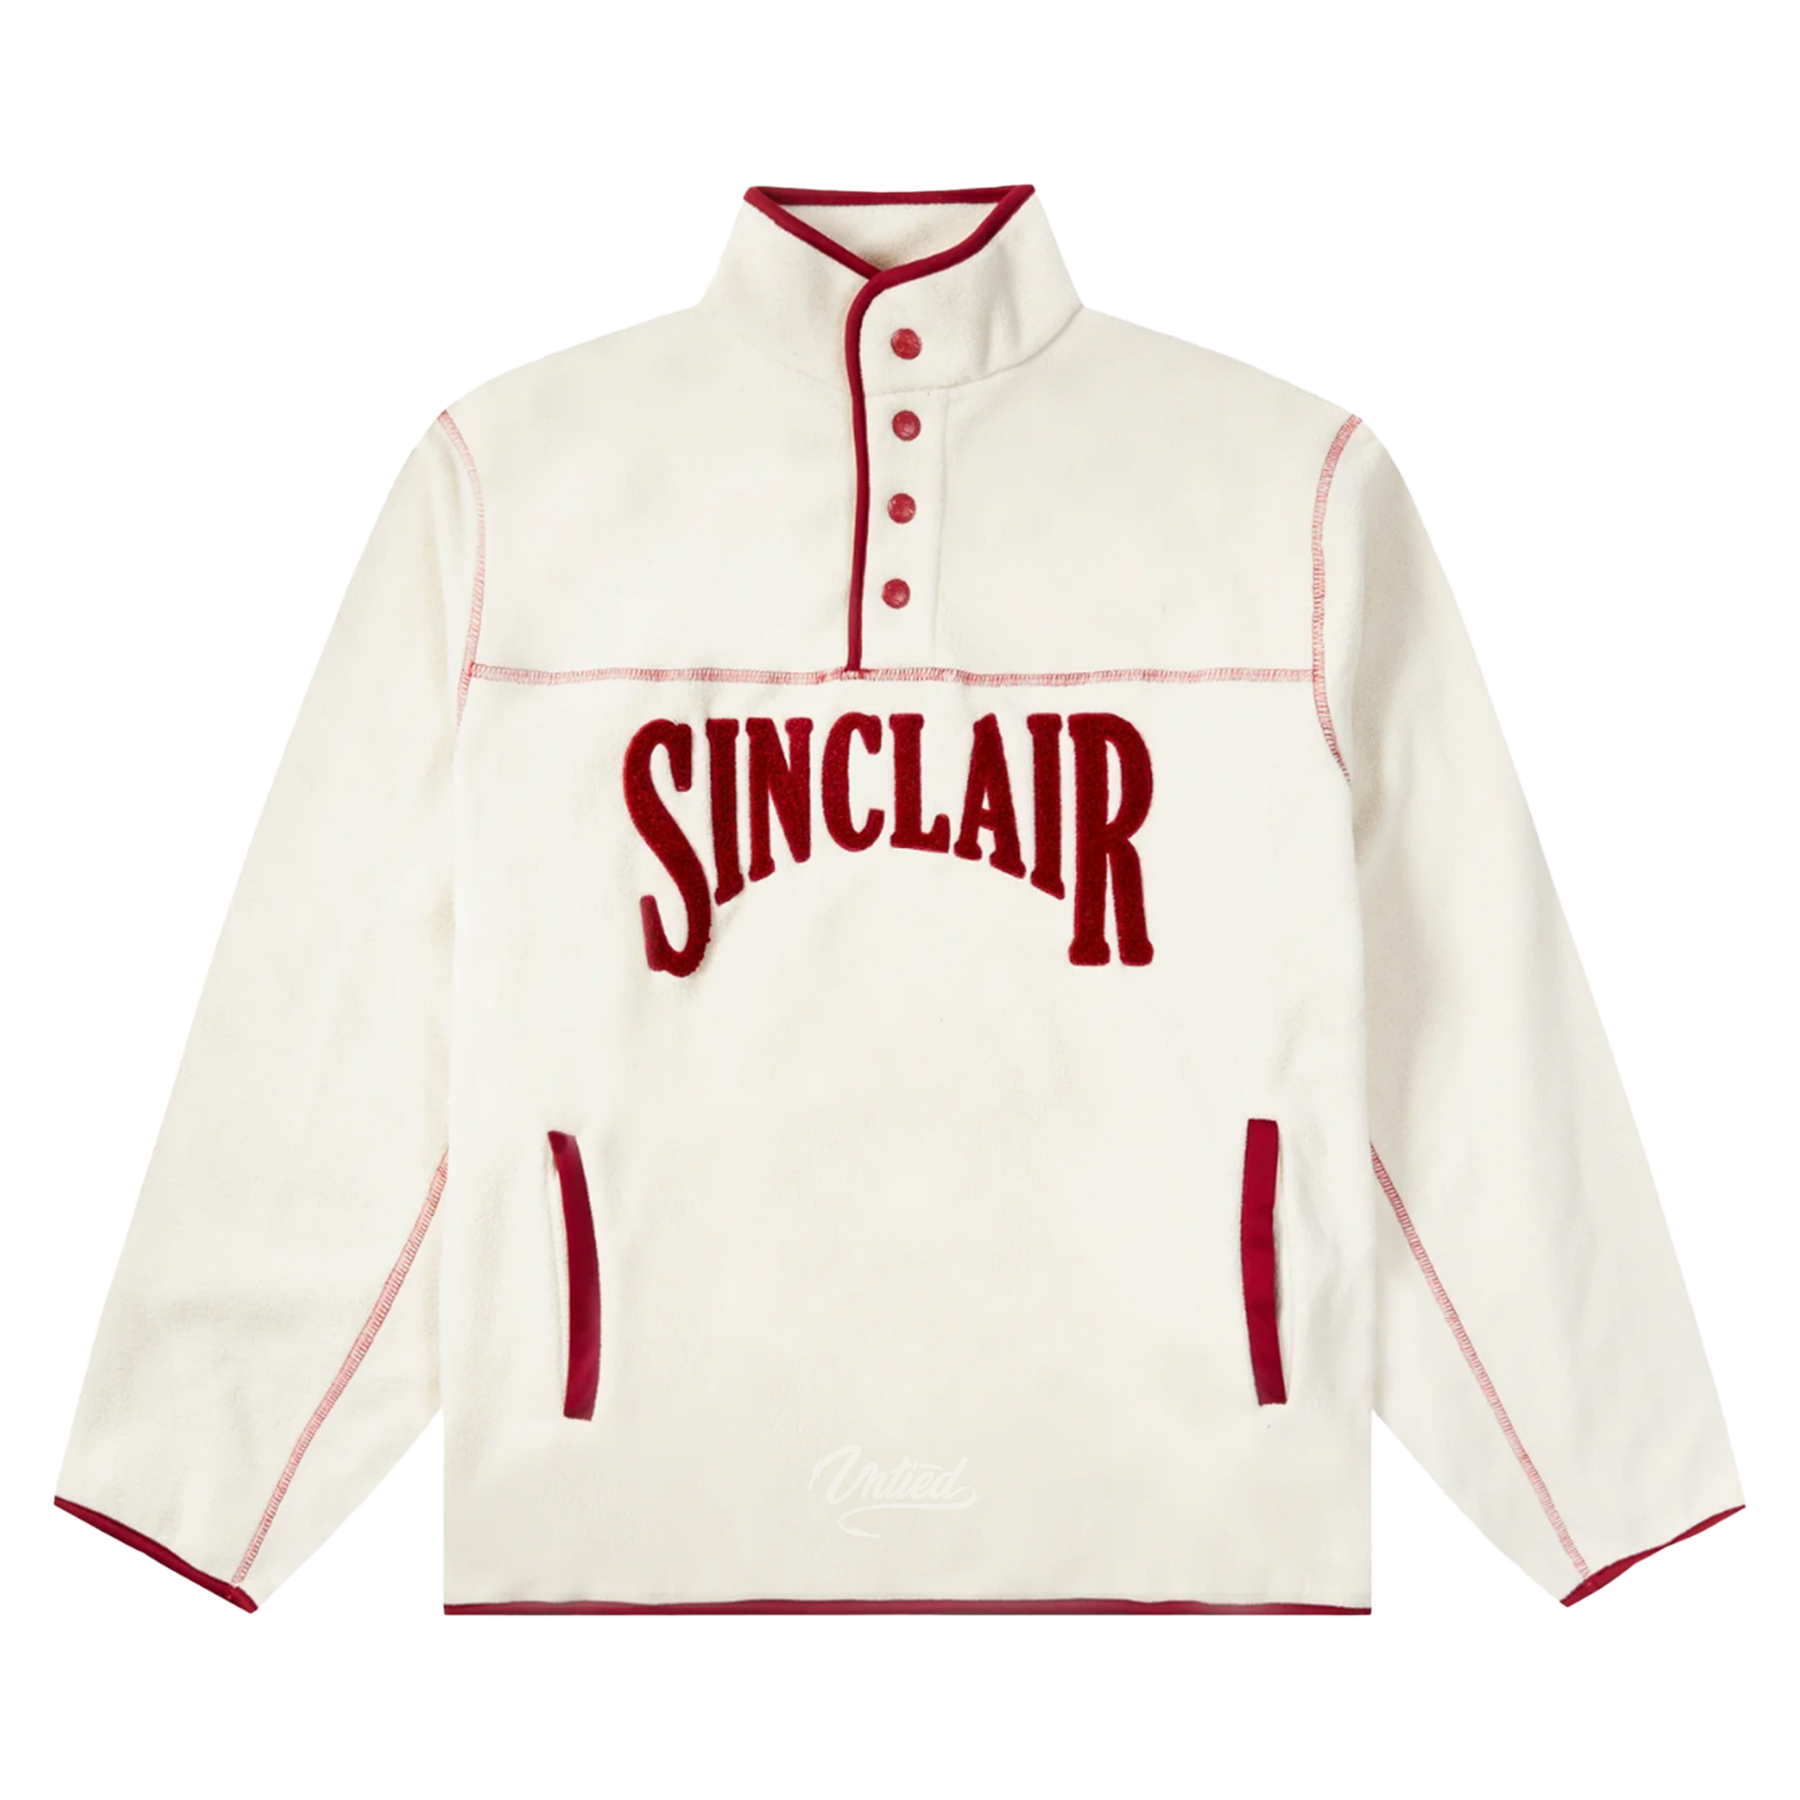 Sinclair Polar Fleece 1/4 Button Up "Cream"